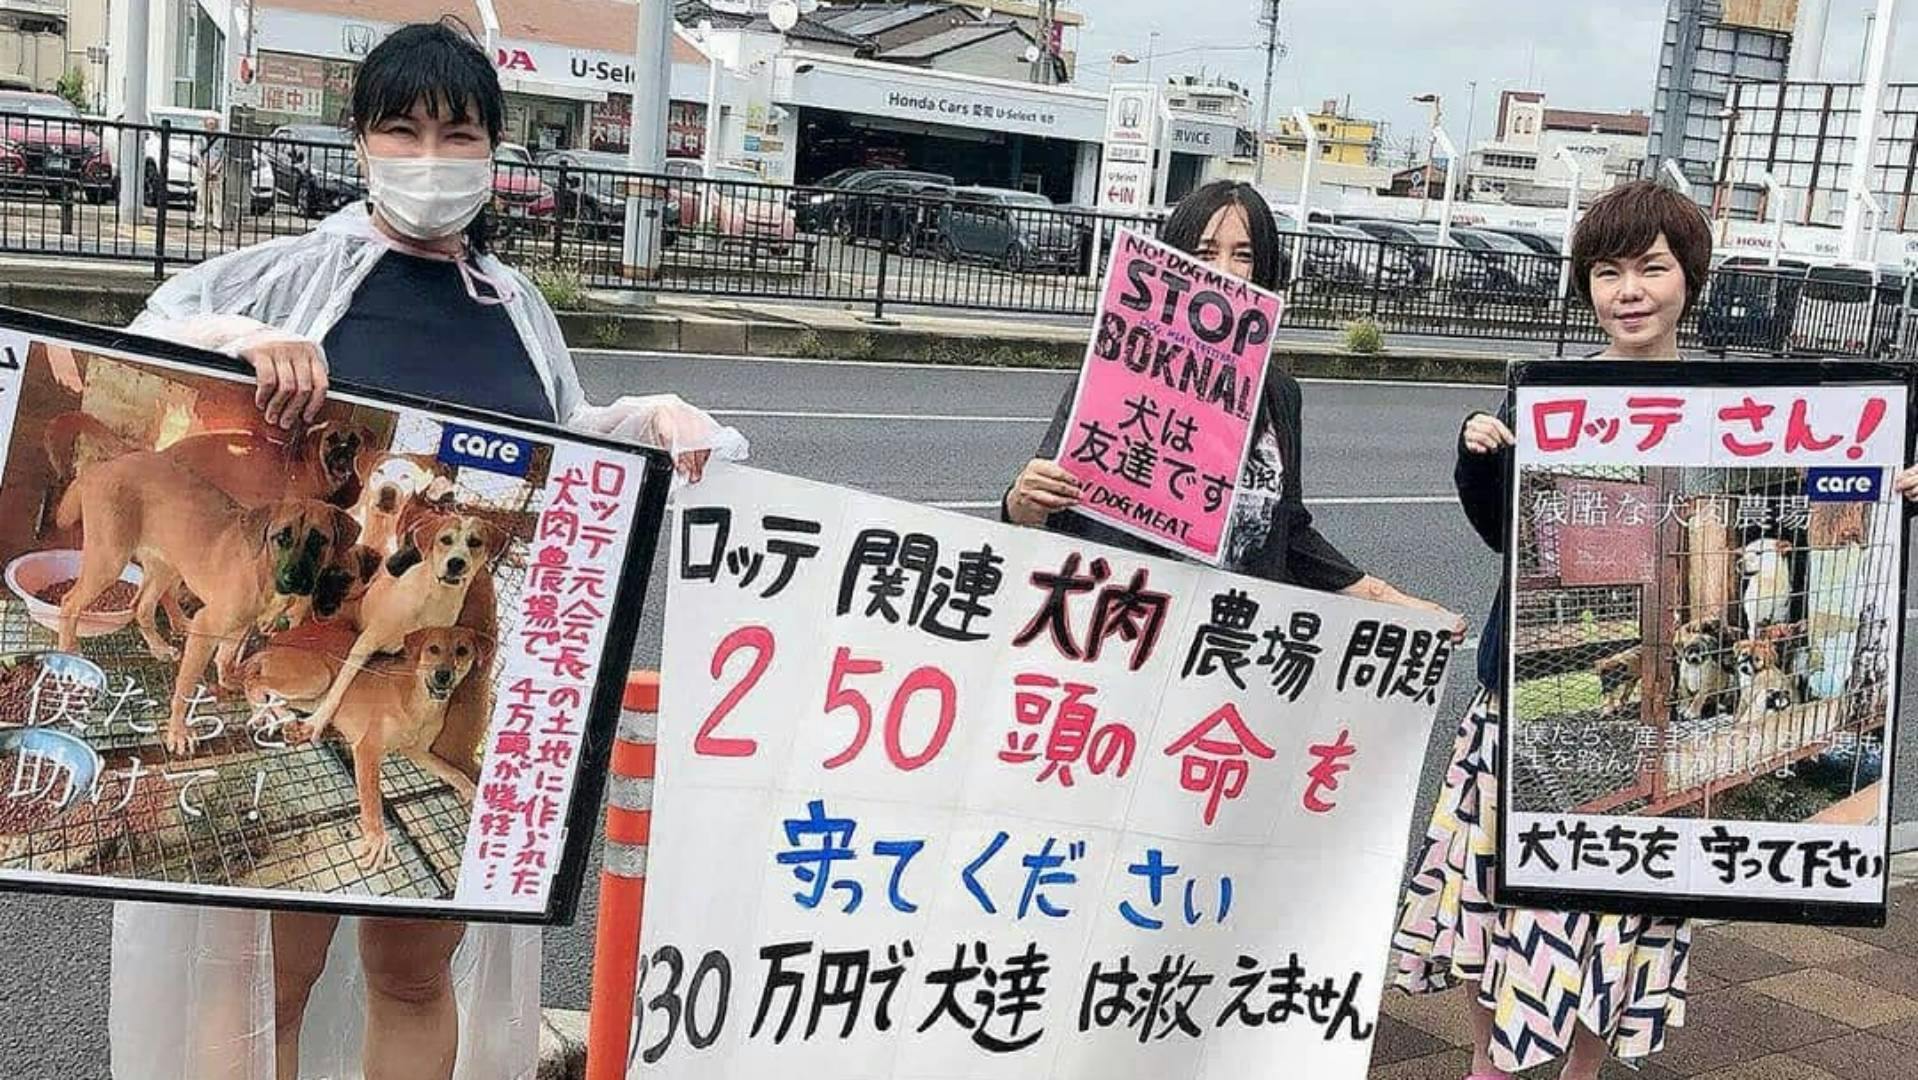 일본인 동물 활동가가 시내에서 기업 롯데에게 이 개 농장 운영의 책임을 묻는 시위를 하고 있다. 사진 제공 롯데목장 개 살리기 시민모임.